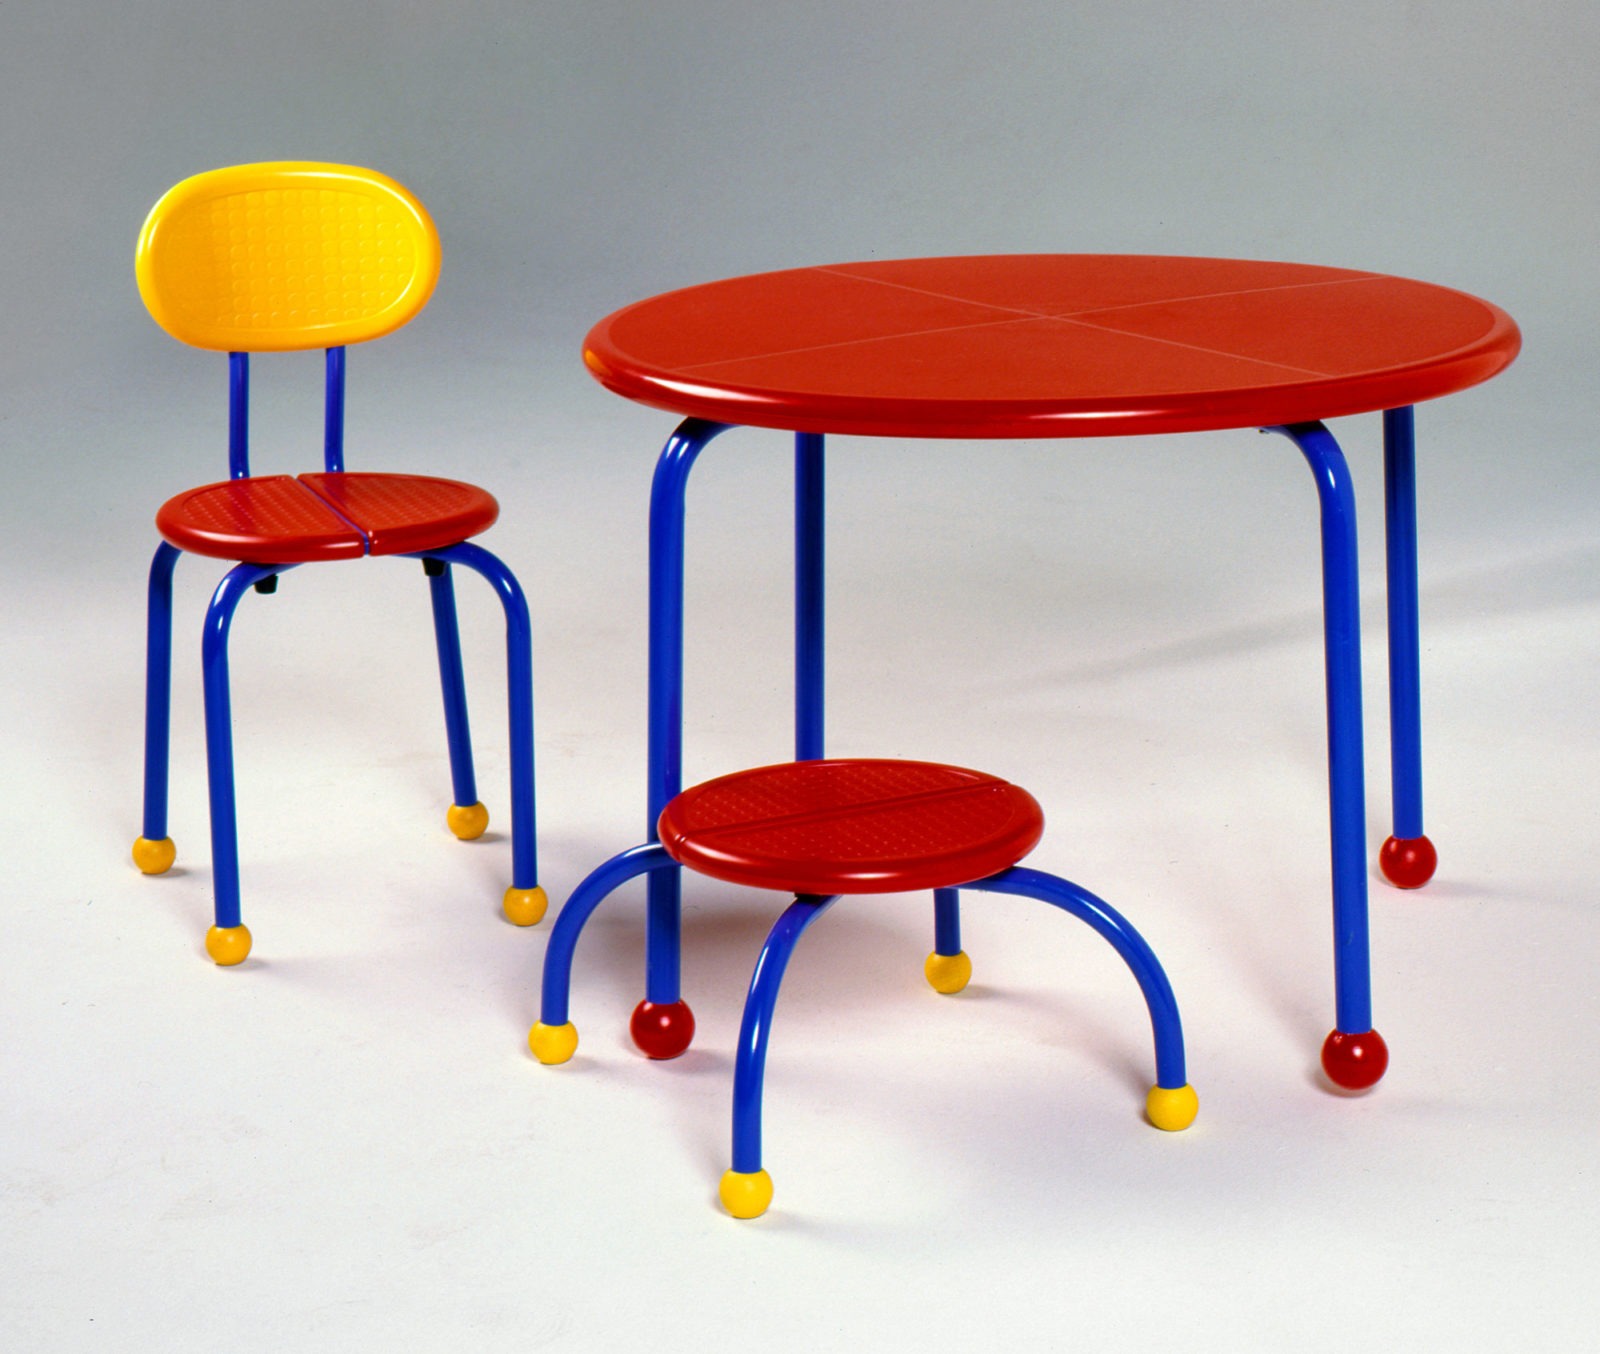 Barnmöbler i klara färger, rött, gult och blått - ett bord, en stol och en låg pall.